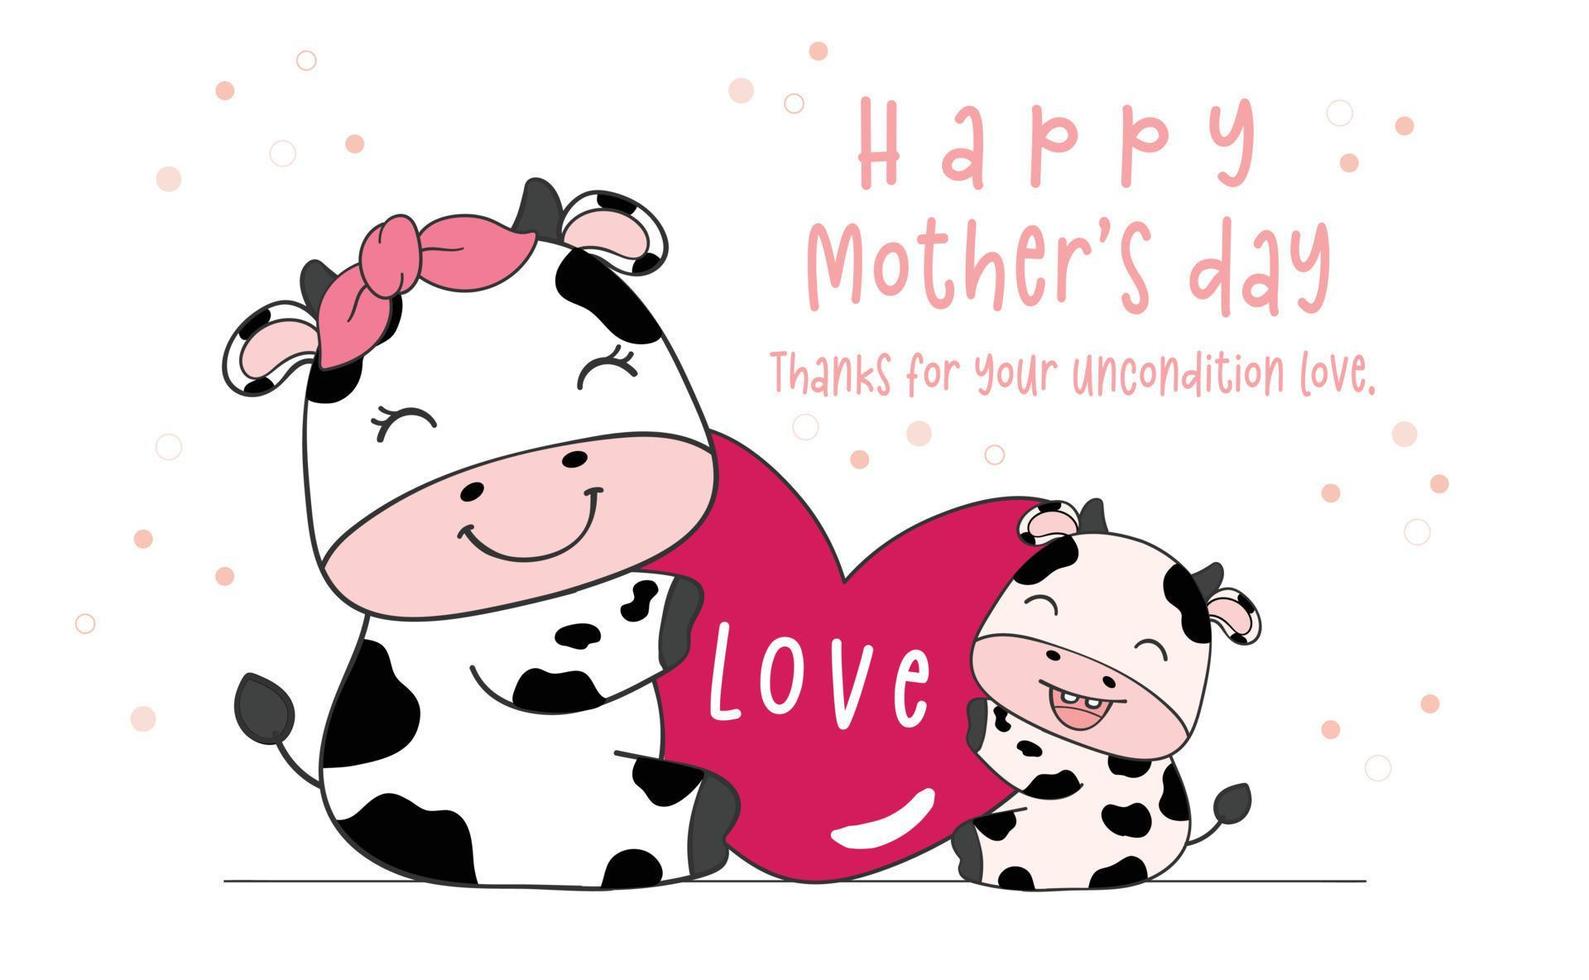 schattige moeder en kind knuffel liefde hart, gelukkige moederdag, vee boerderij dier cartoon karakter doodle tekening illustratie vector